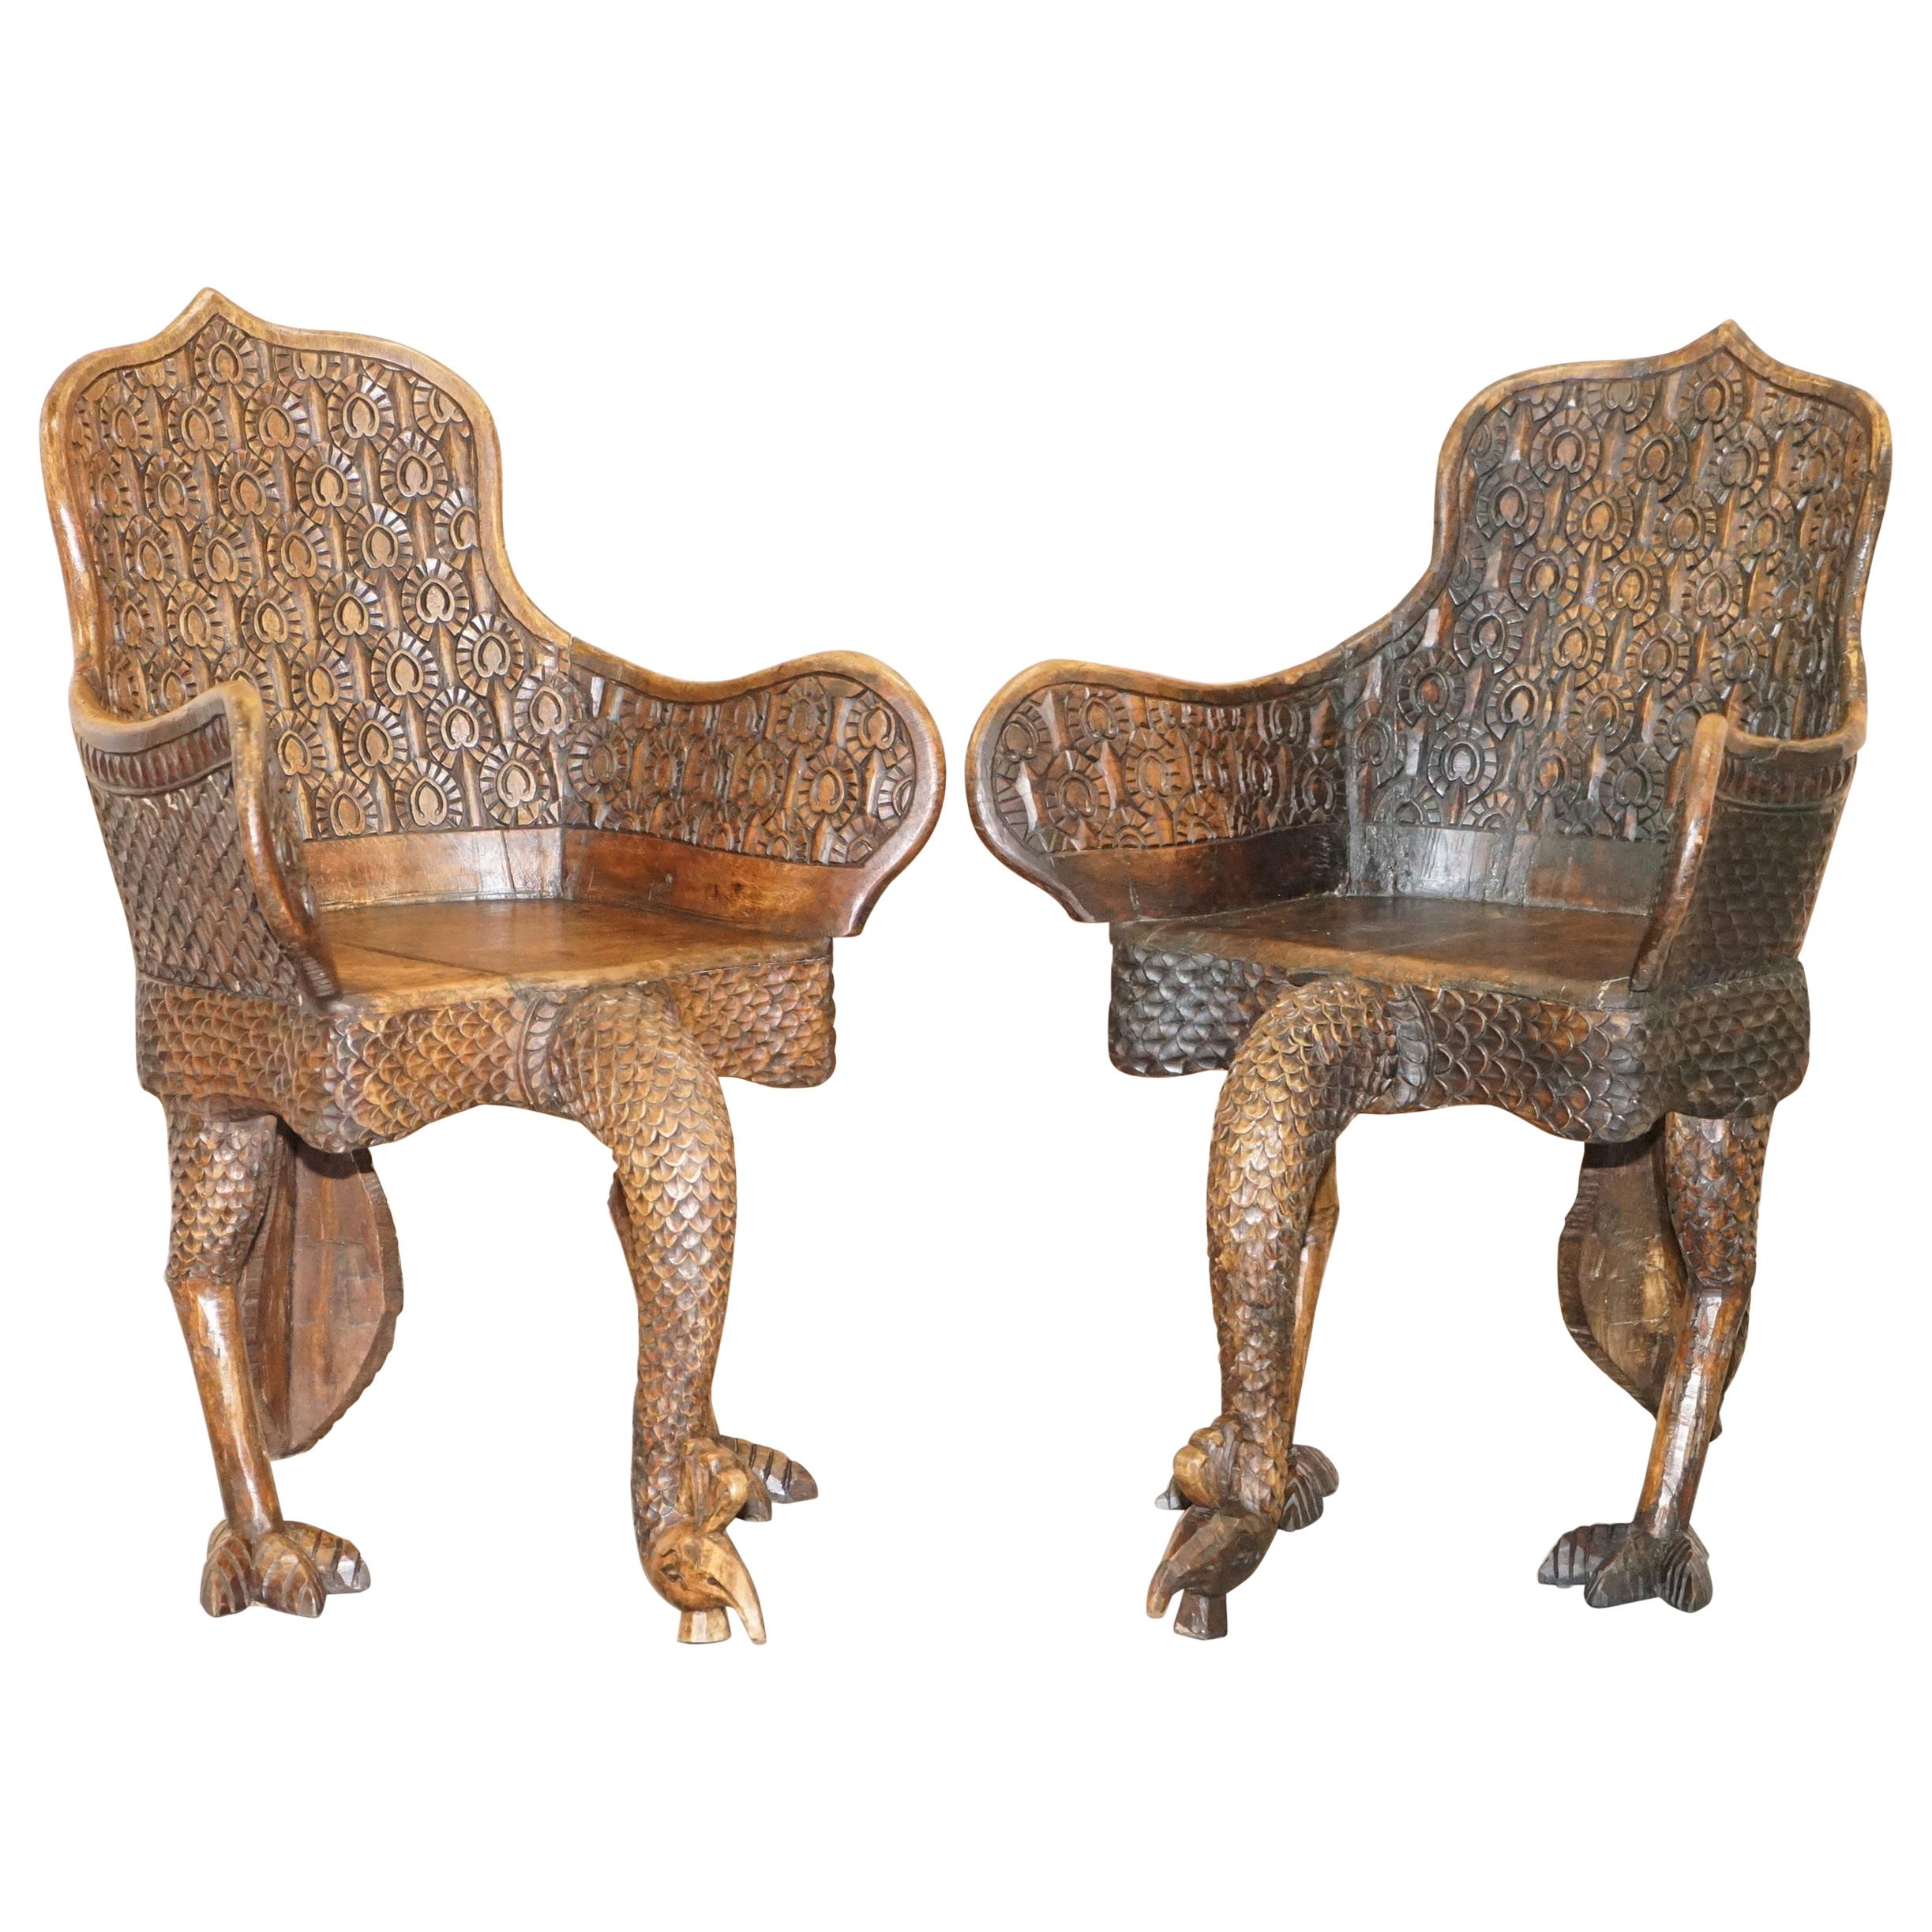 Paire de fauteuils paon ornés, sculptés à la main, de style anglo-indien birman, datant d'environ 1880